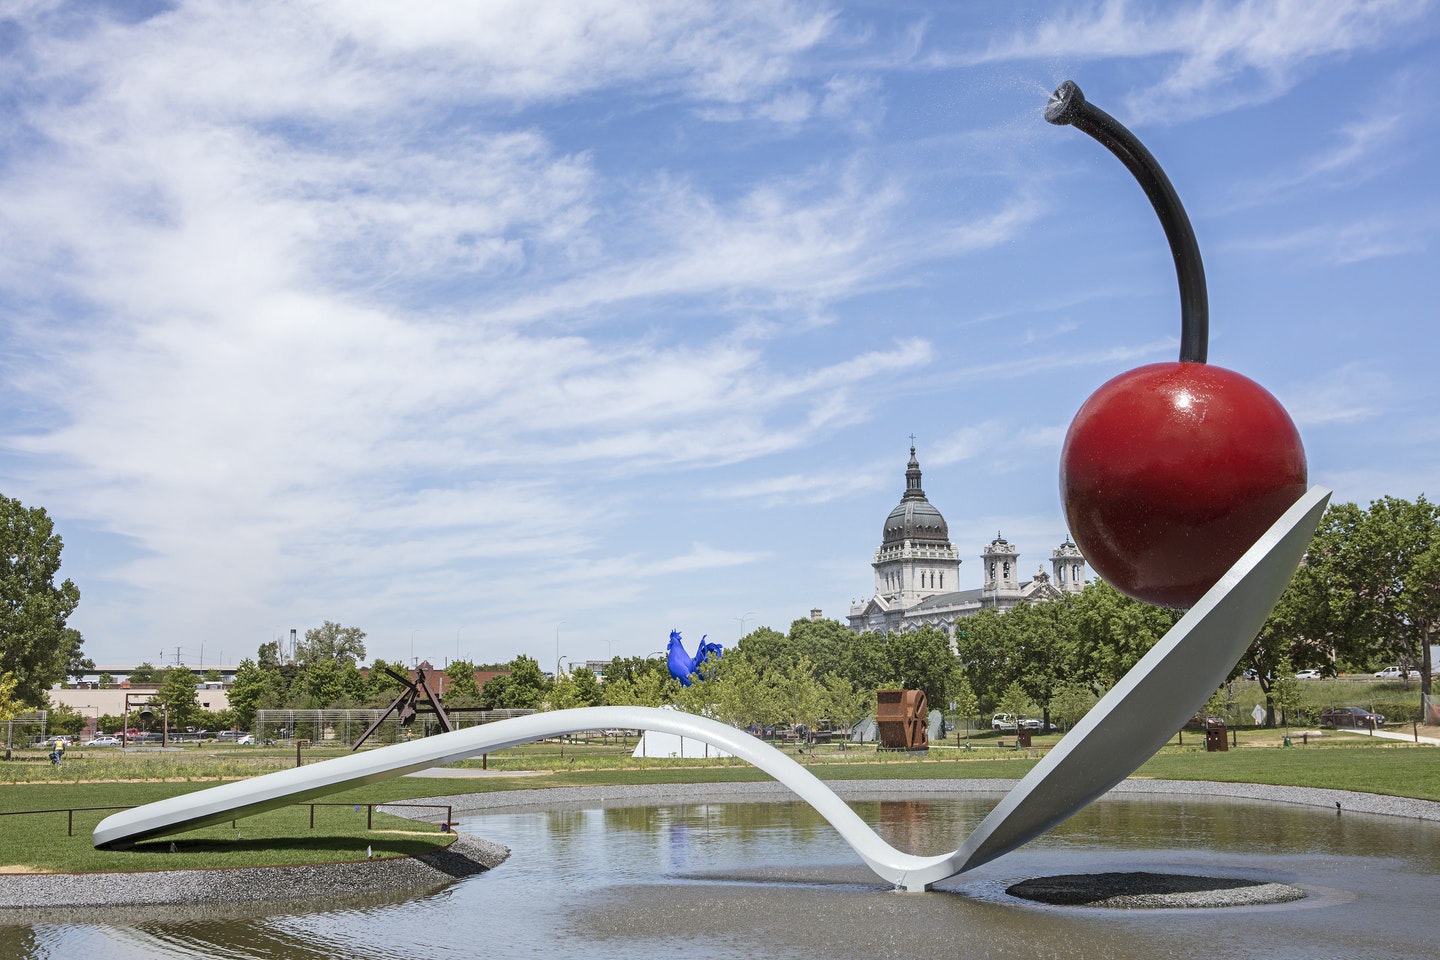 Spoonbridge and Cherry in the Minneapolis Sculpture Garden.